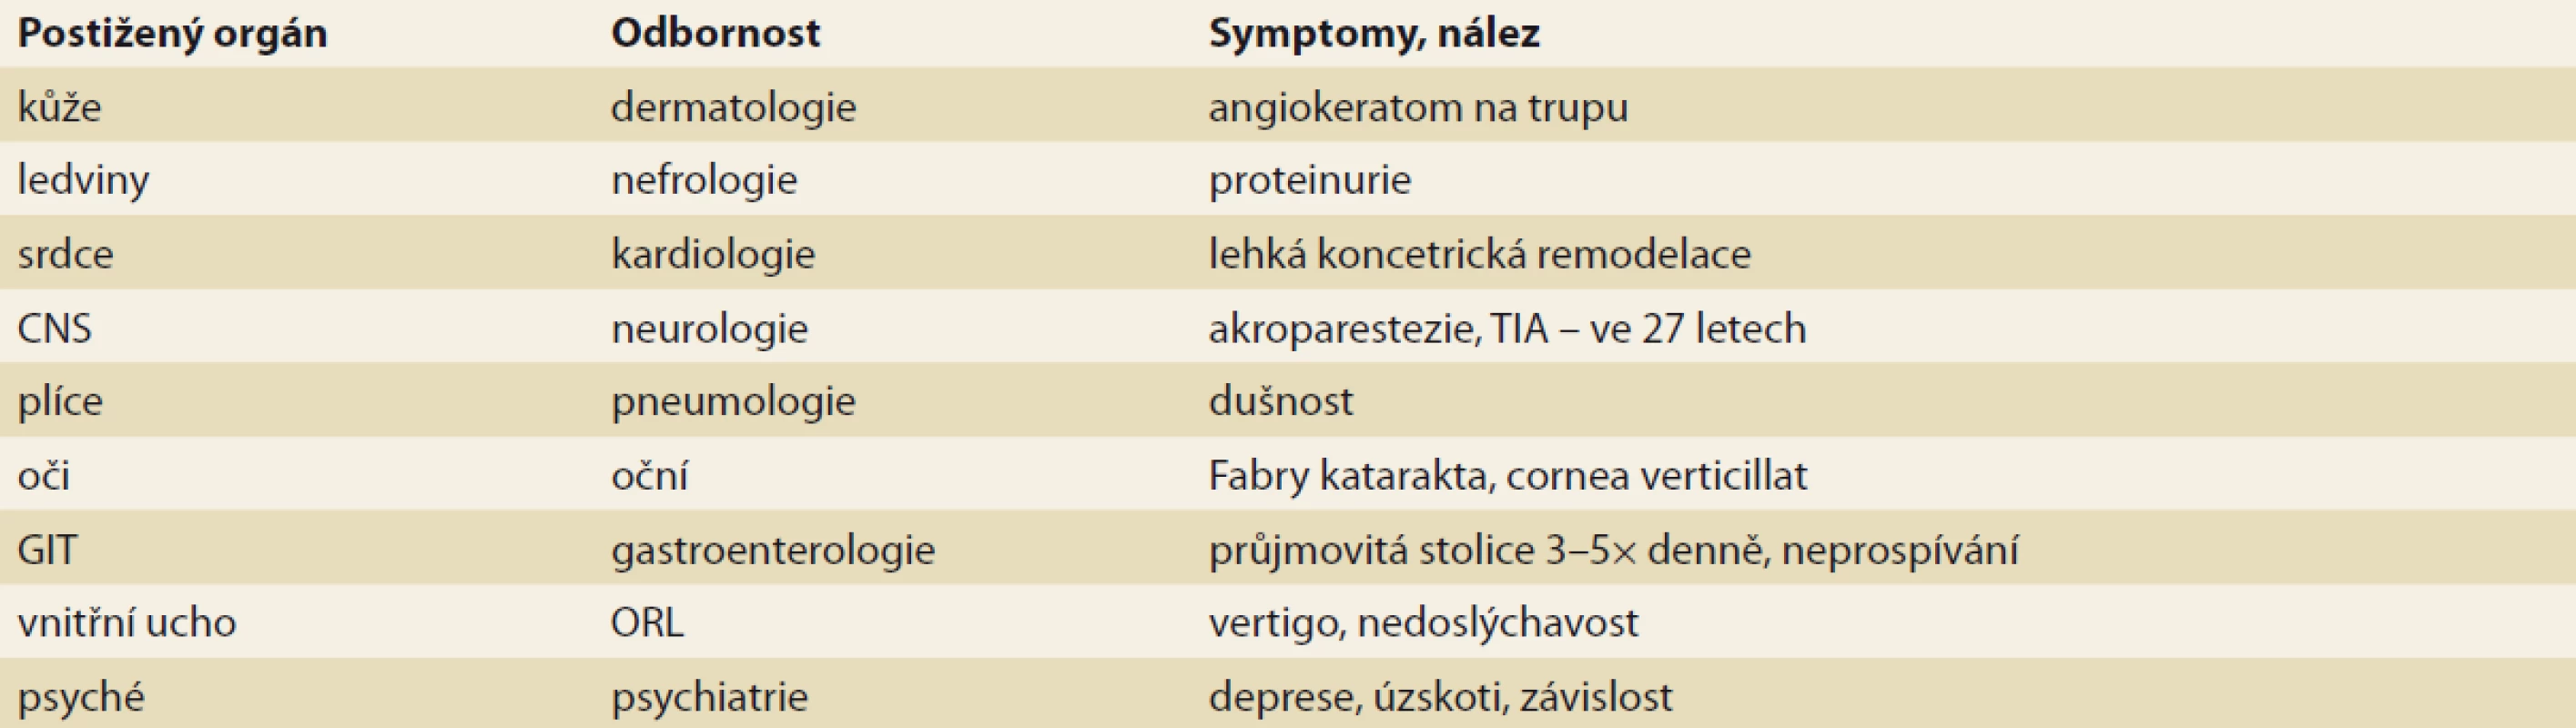 Souhrn postižených orgánů a symptomů pacienta.<br>
Tab. 1. Summary of affected organs and symptoms.